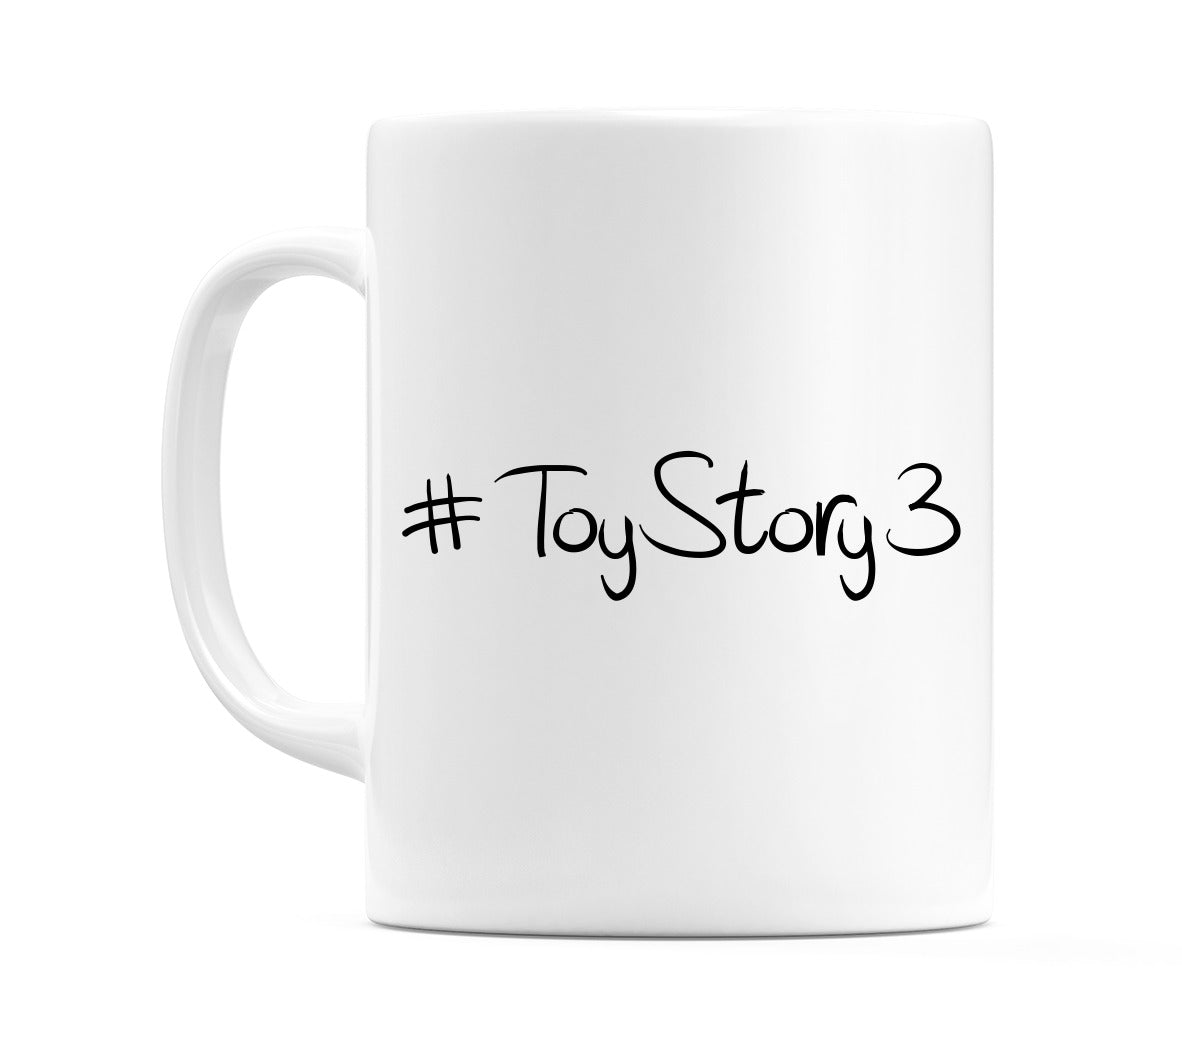 #ToyStory3 Mug